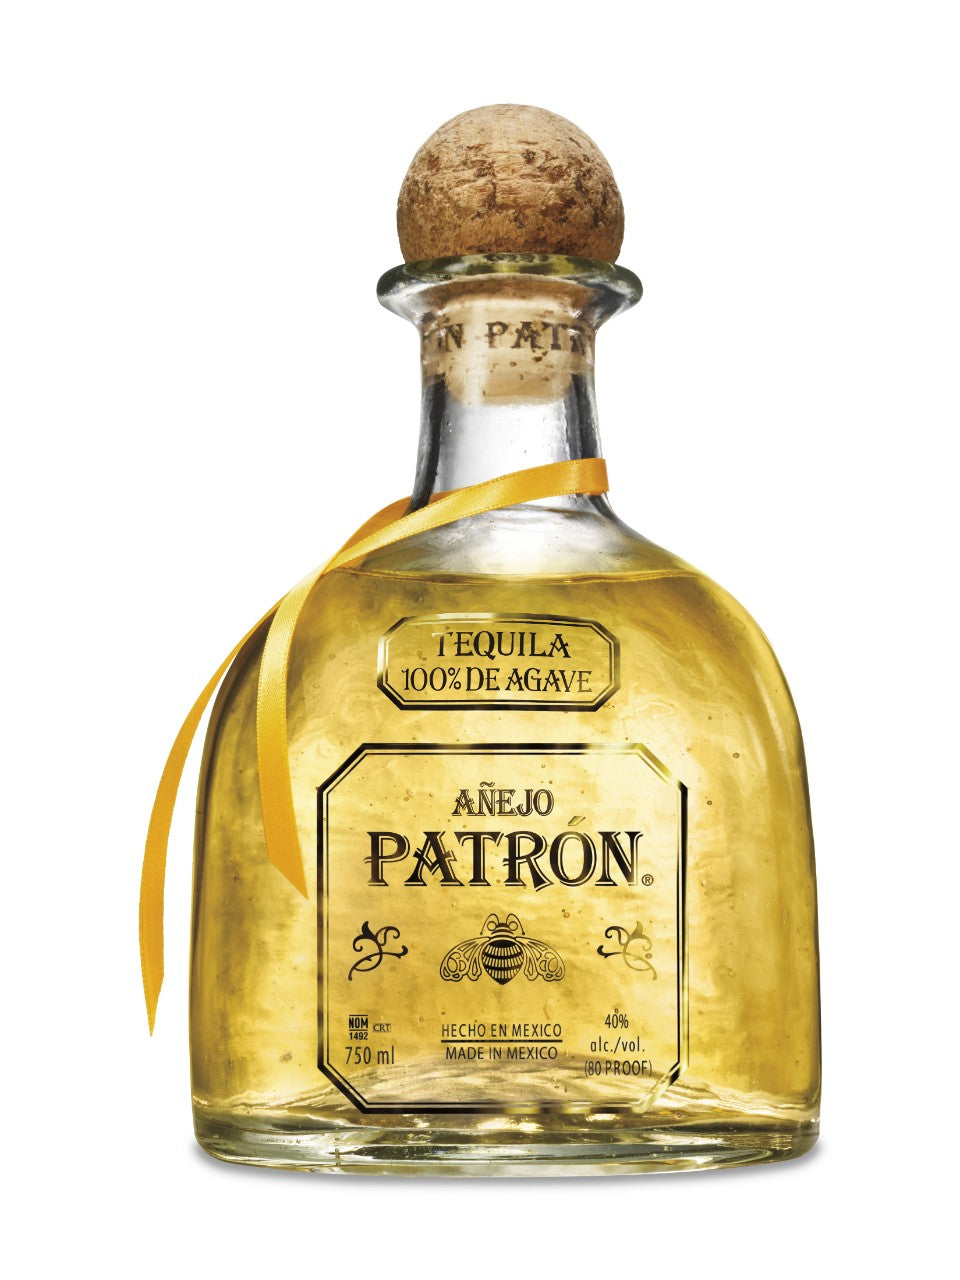 Patron Anejo Tequila 750 mL bottle